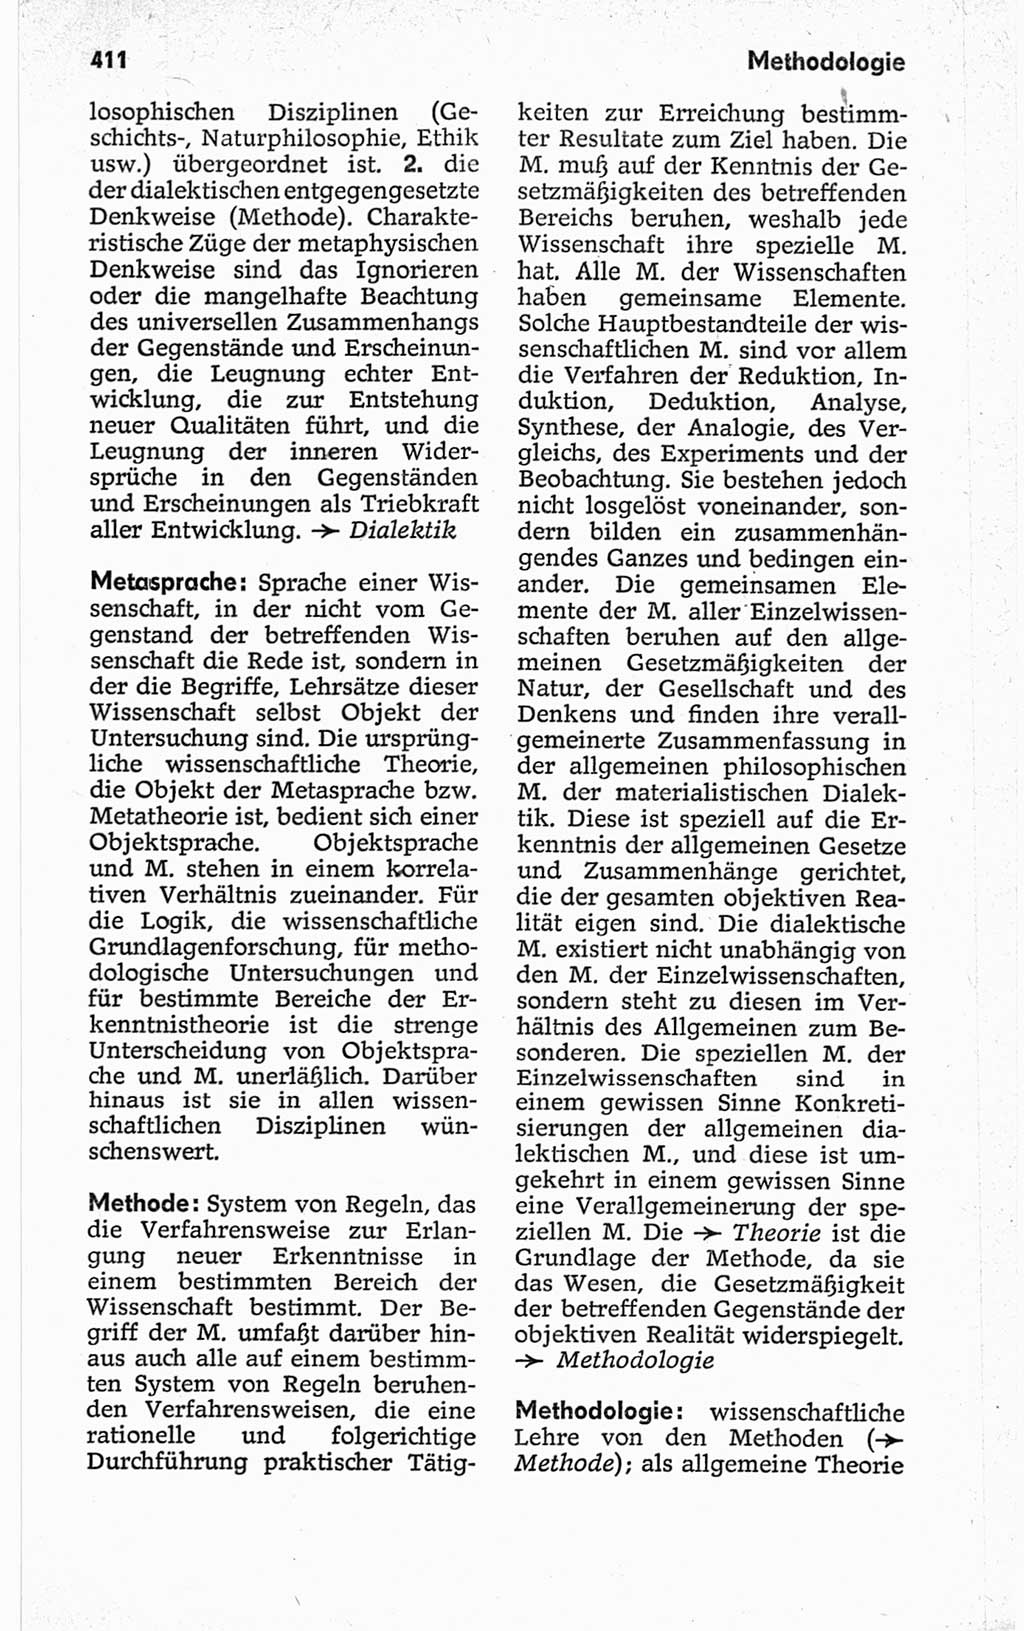 Kleines politisches Wörterbuch [Deutsche Demokratische Republik (DDR)] 1967, Seite 411 (Kl. pol. Wb. DDR 1967, S. 411)